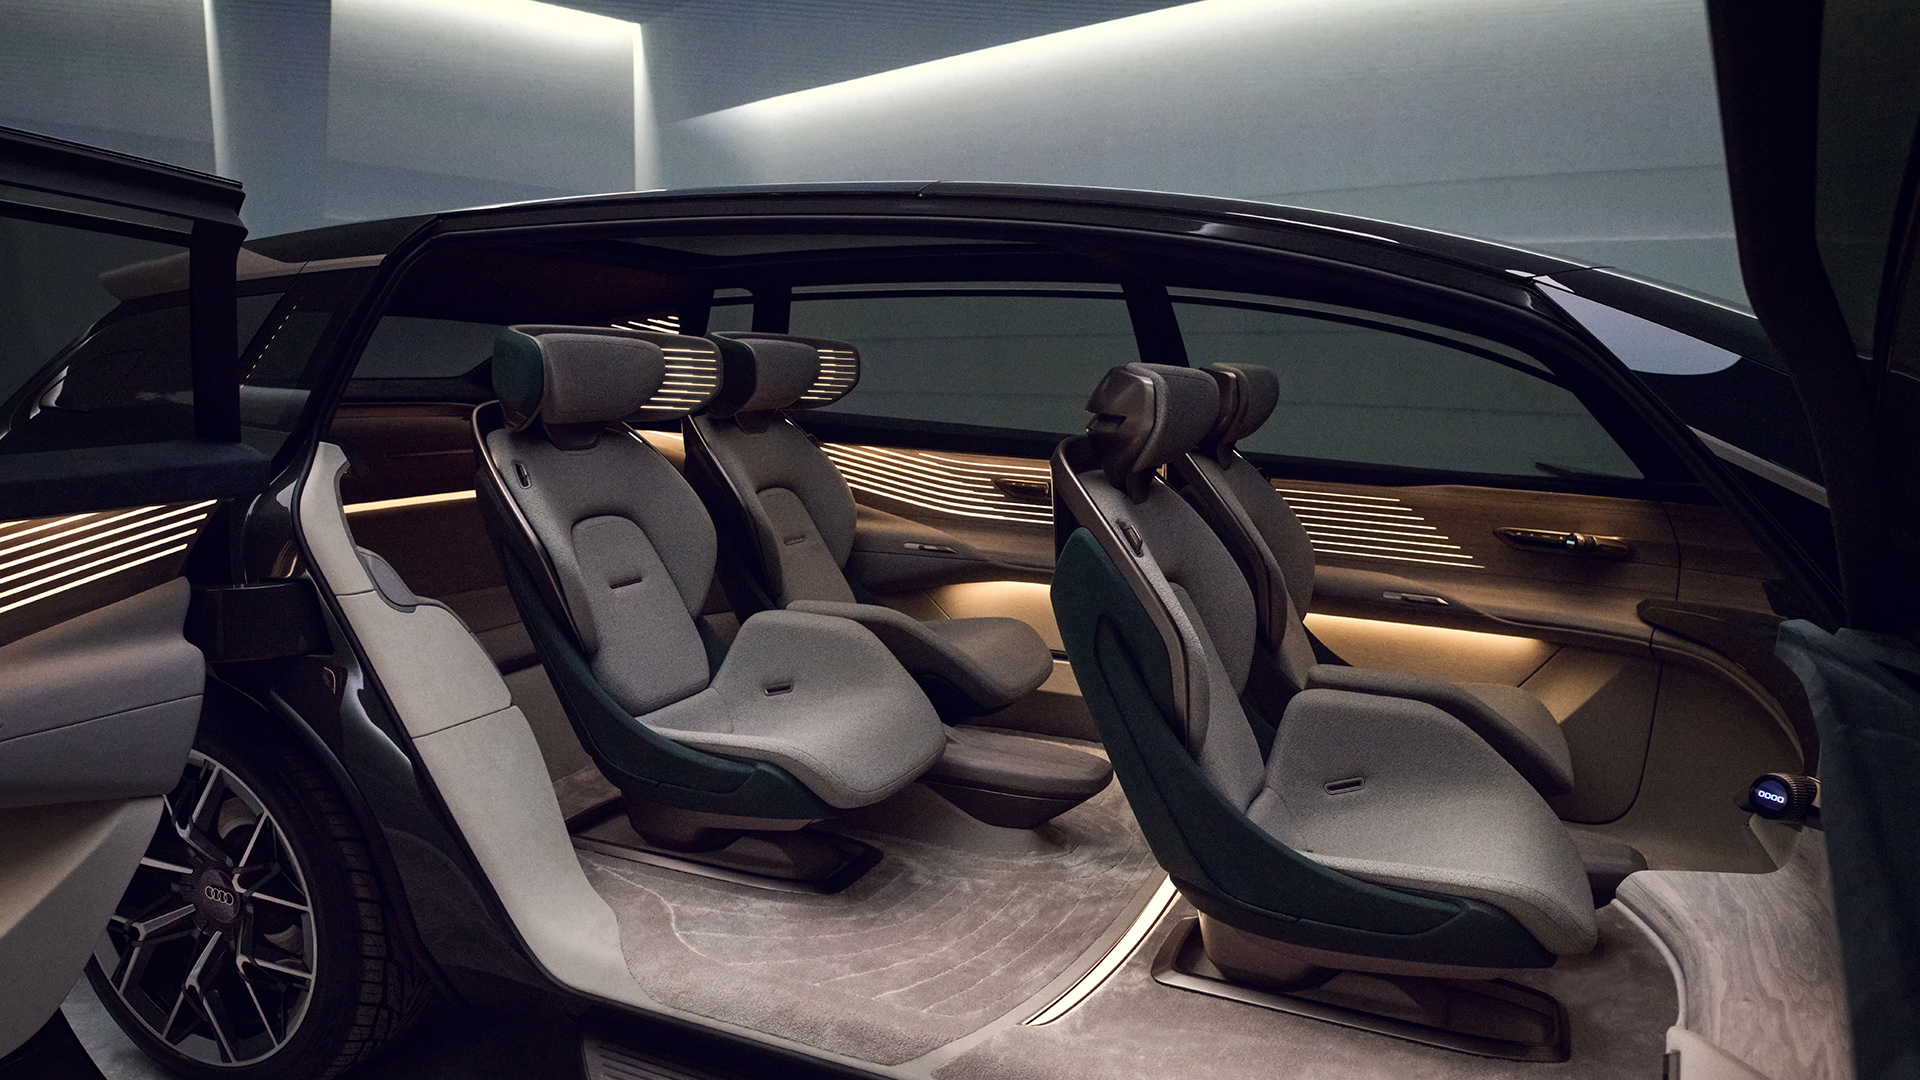 De Audi urbansphere concept heeft het grootste Audi-interieur tot nu toe. Elke stoel draait als onderdeel van het first-class comfort.